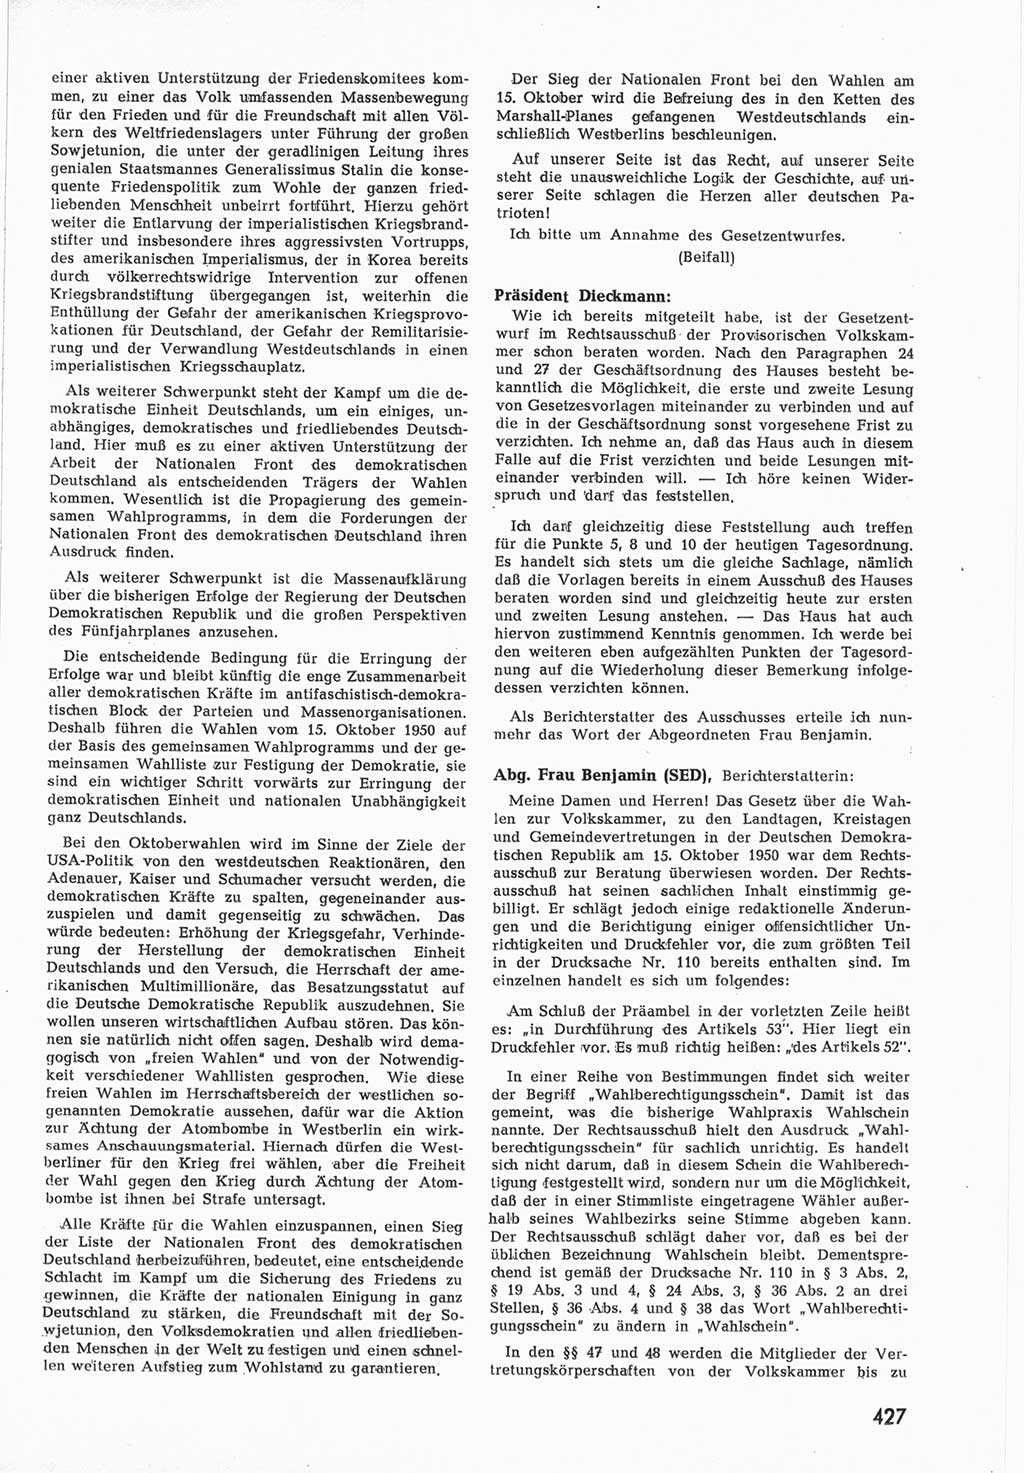 Provisorische Volkskammer (VK) der Deutschen Demokratischen Republik (DDR) 1949-1950, Dokument 445 (Prov. VK DDR 1949-1950, Dok. 445)